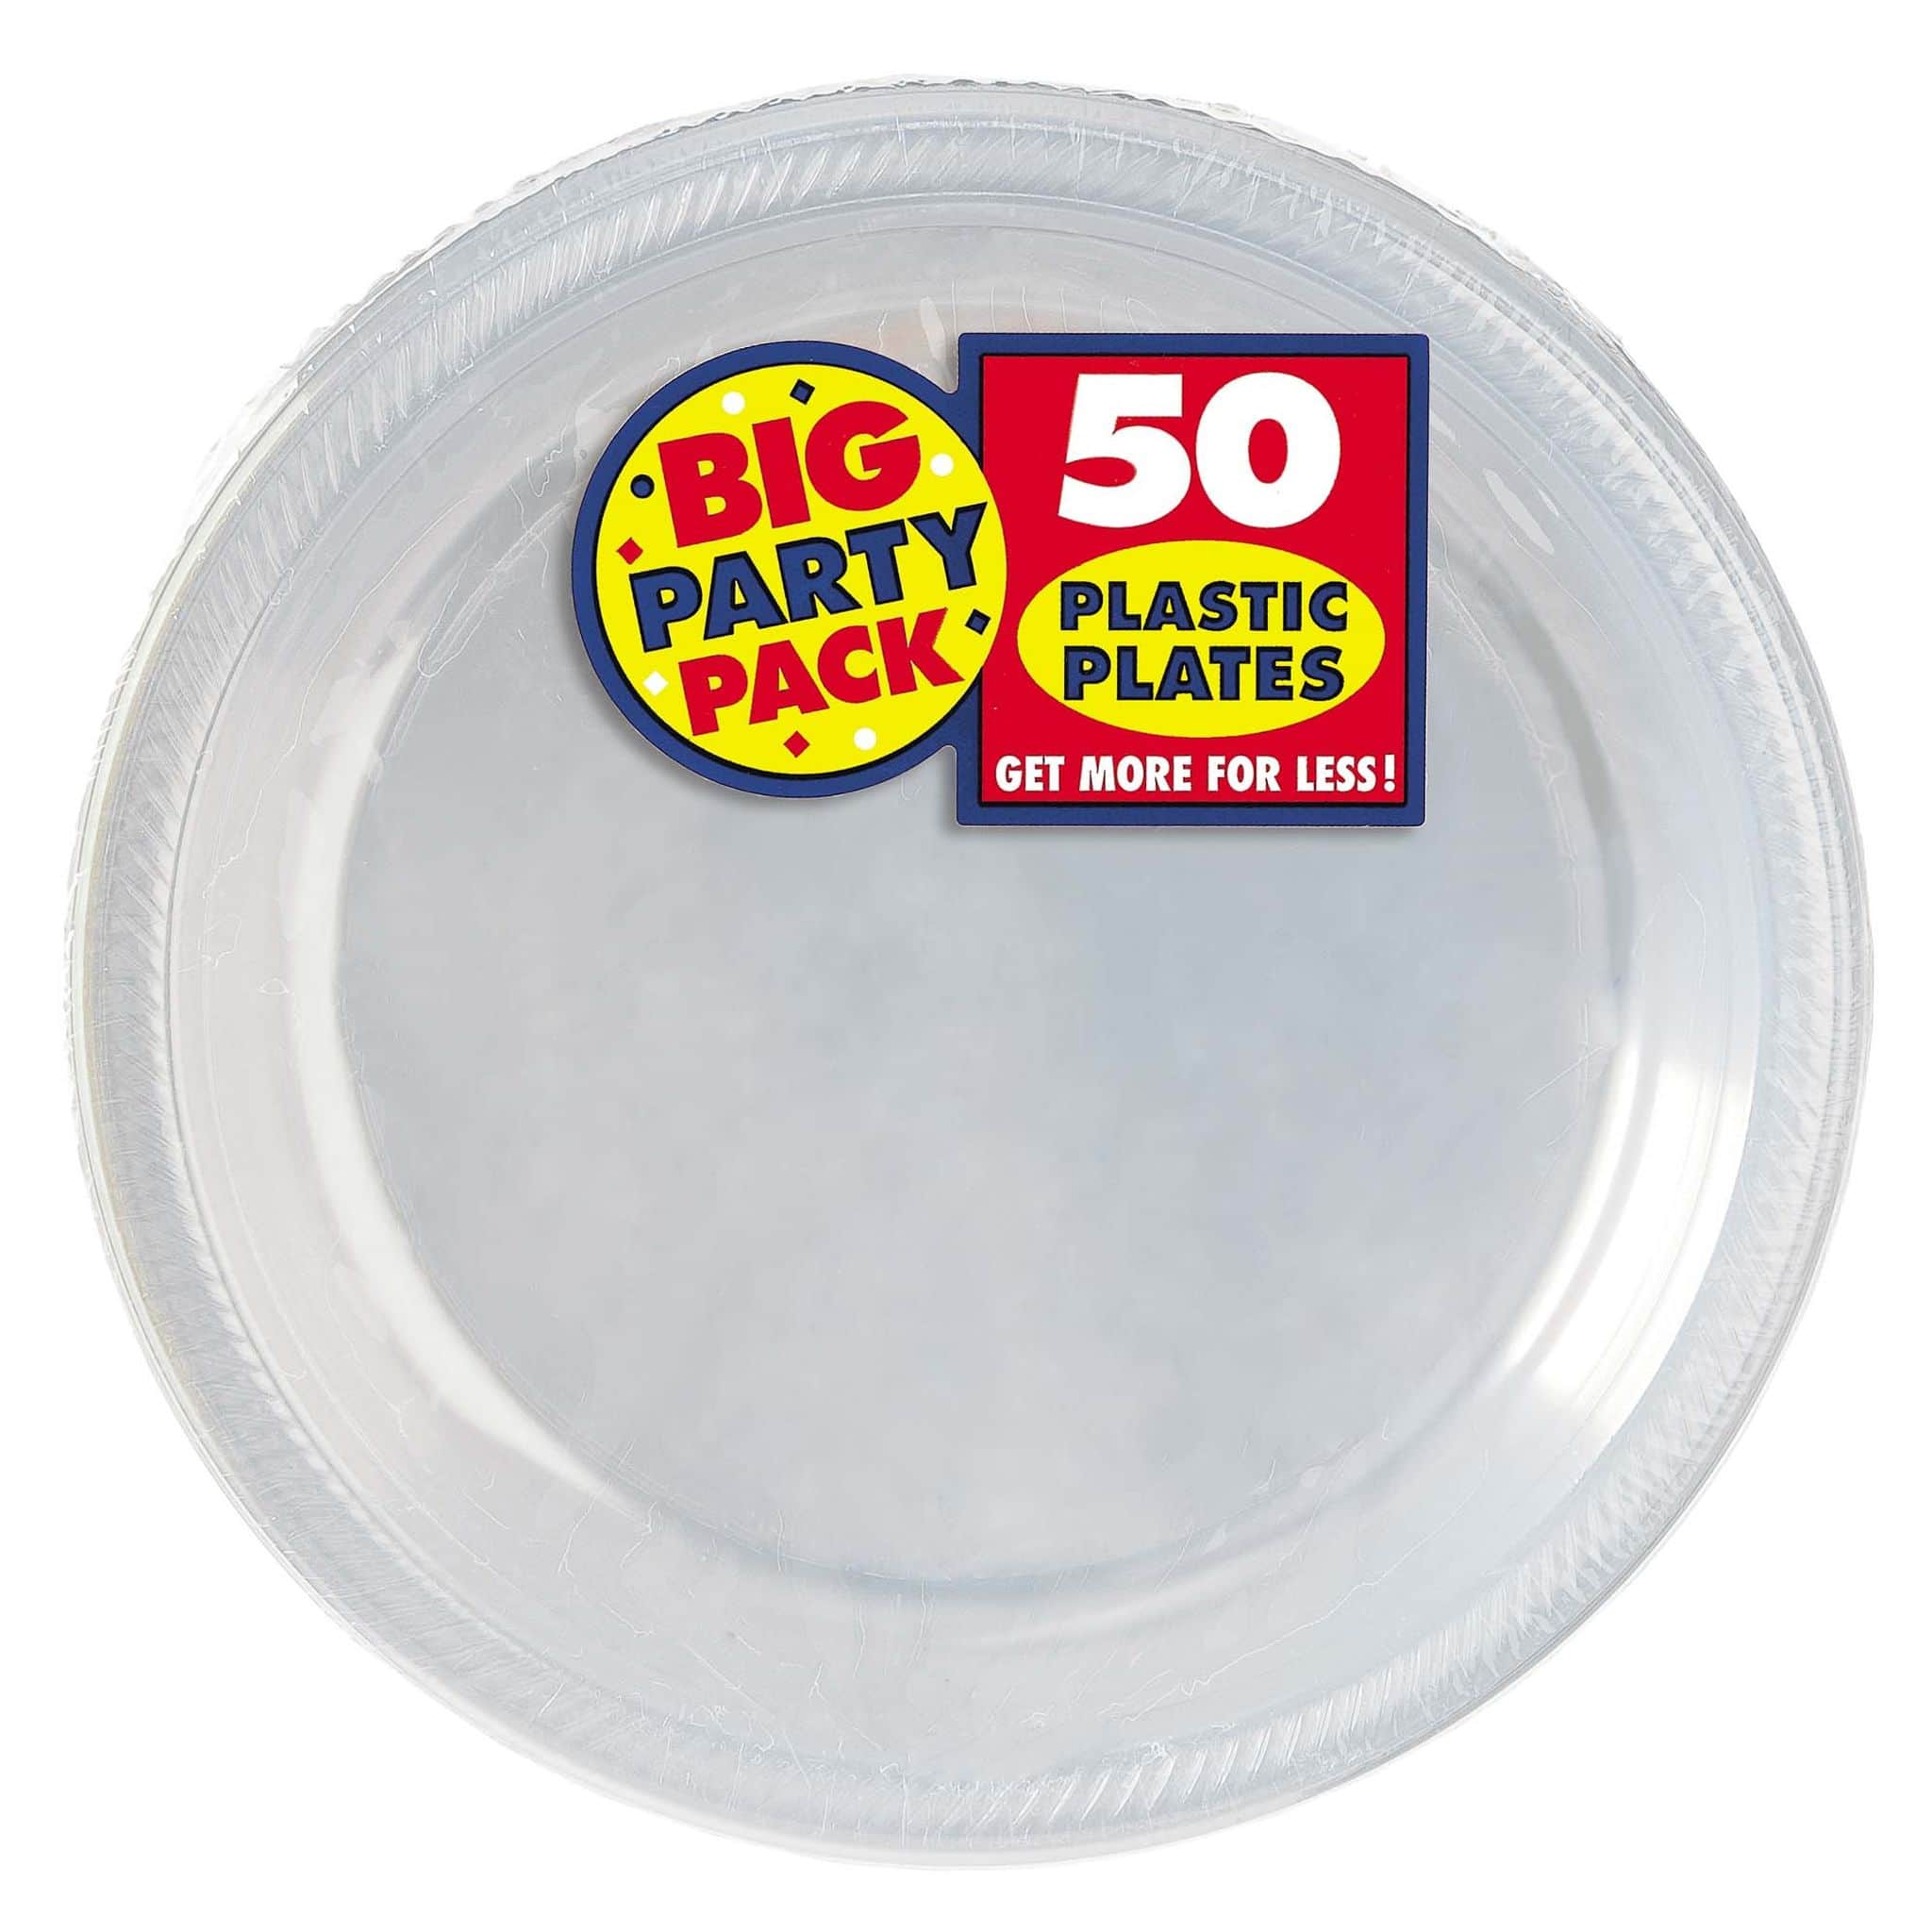 10.5" Round Plastic Plates